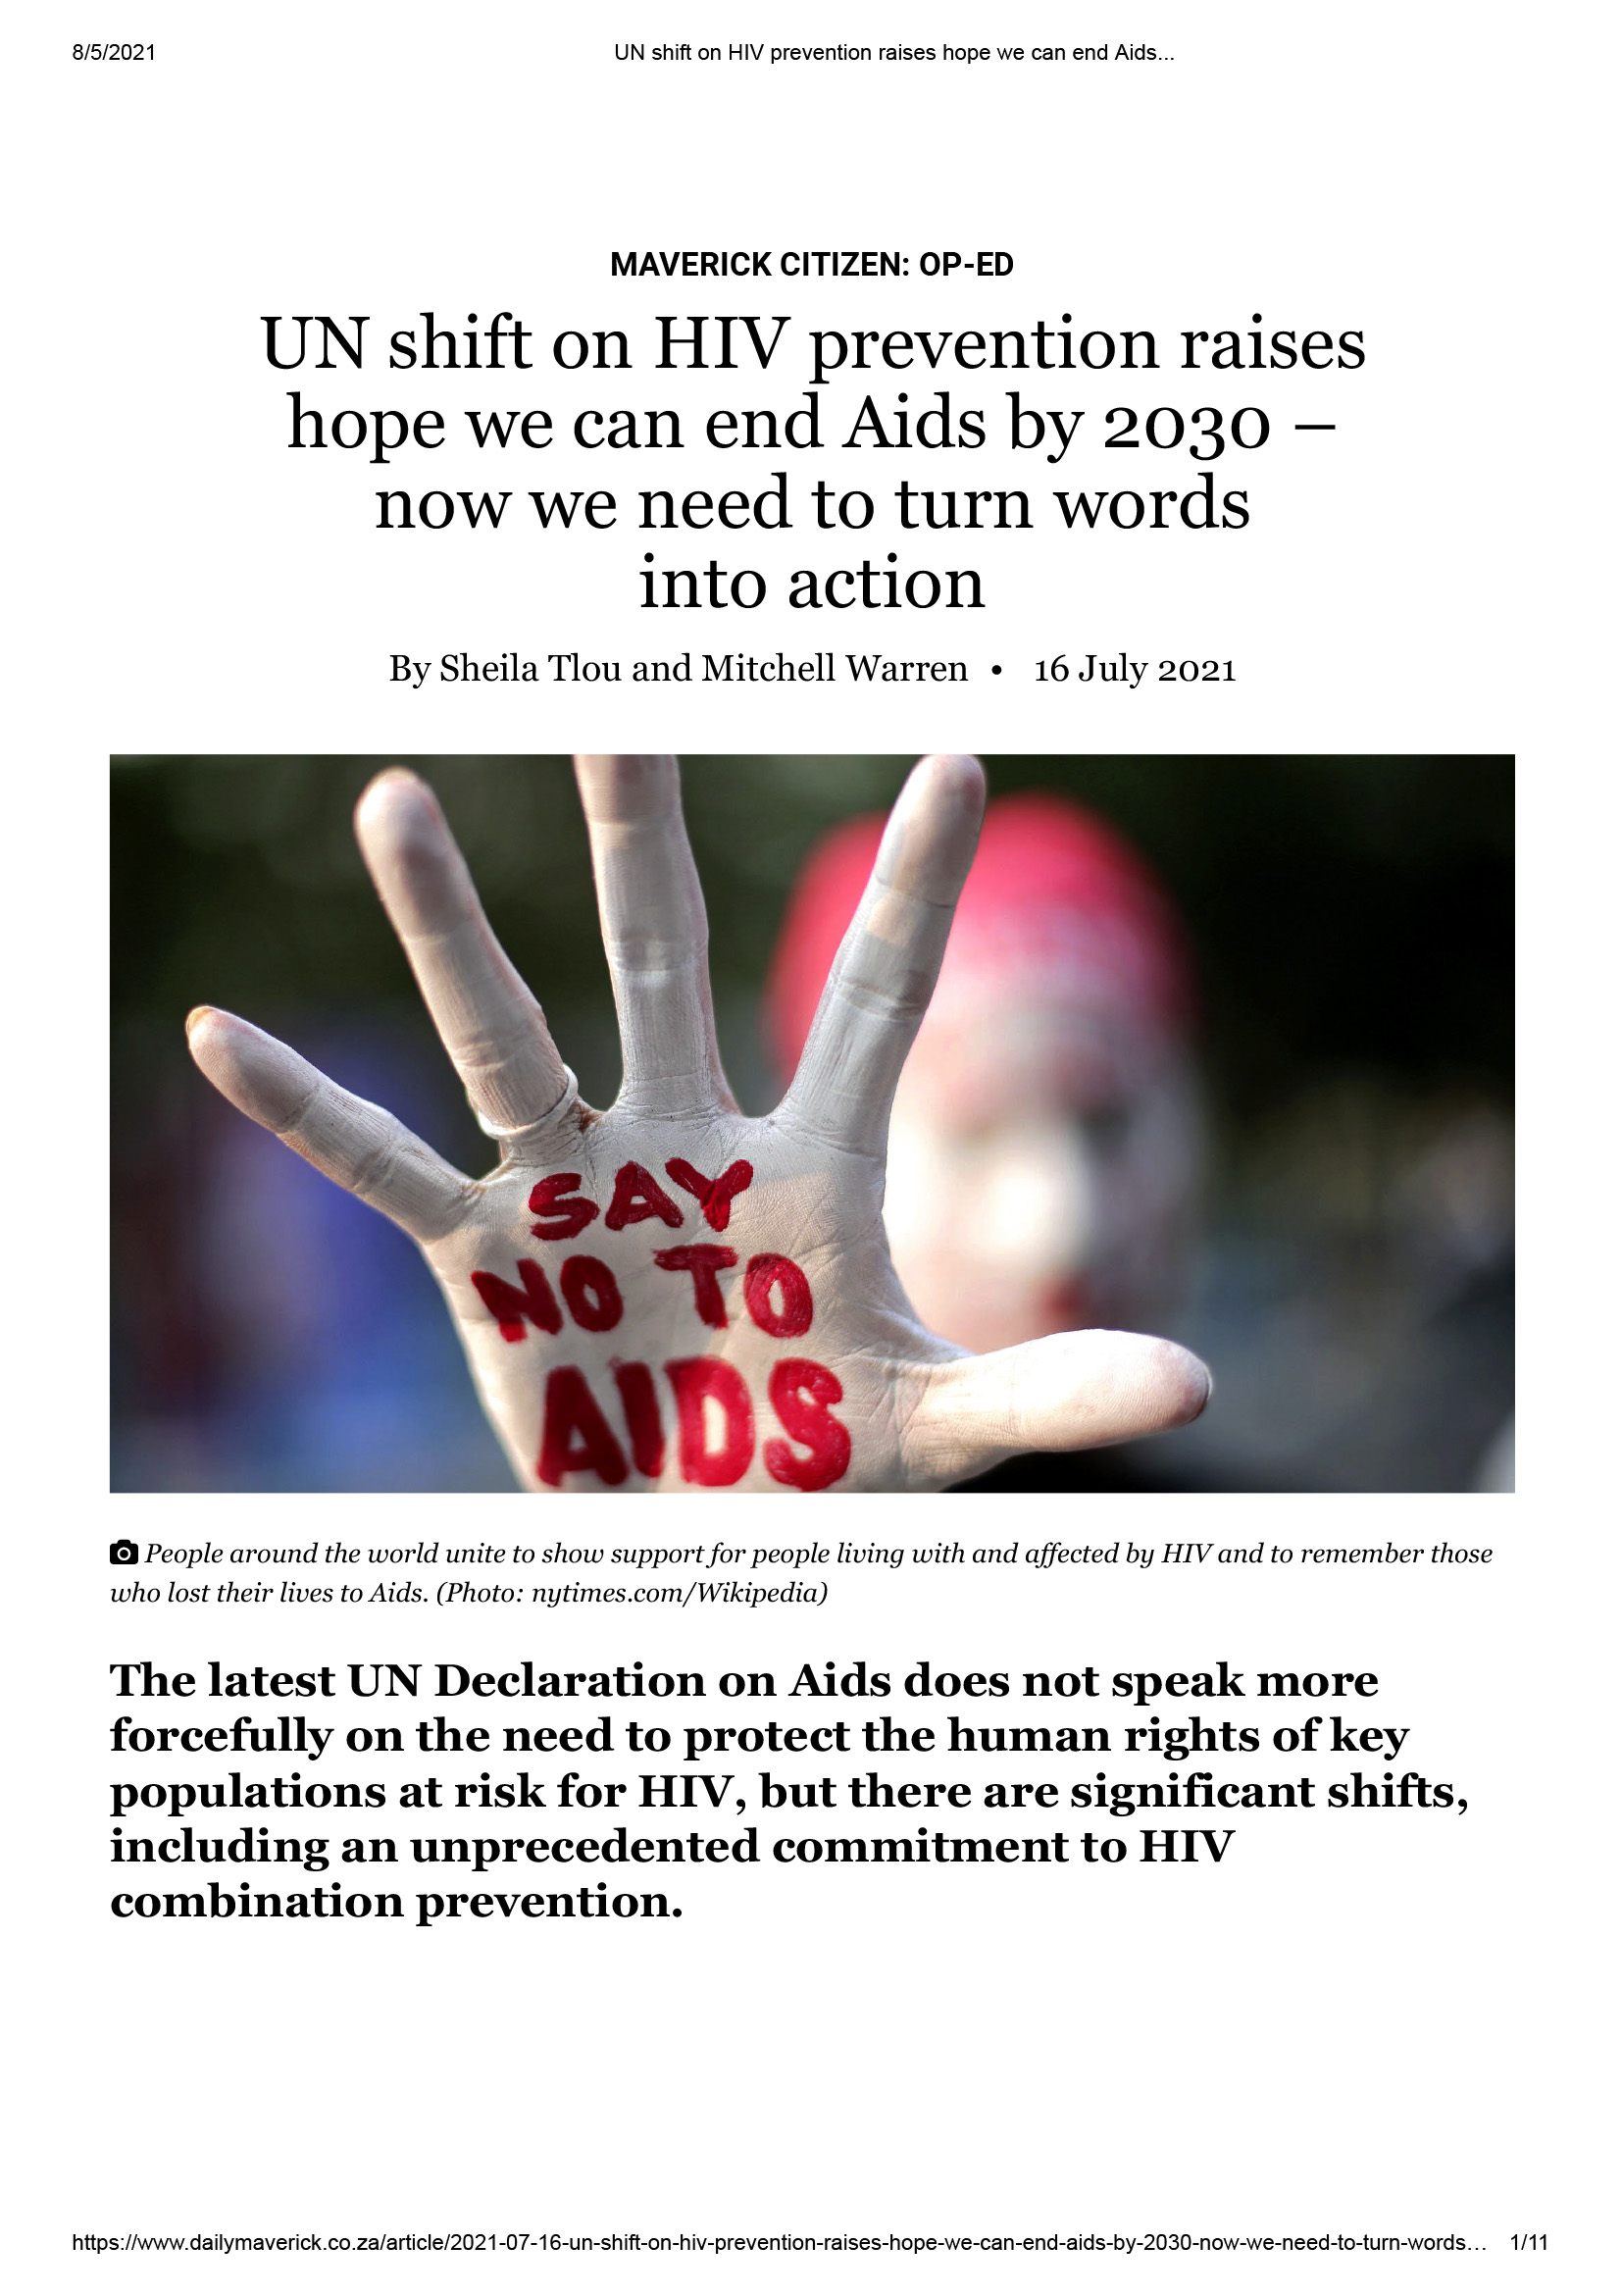 Le changement de cap des Nations unies en matière de prévention du VIH suscite l'espoir d'éradiquer le sida d'ici à 2030